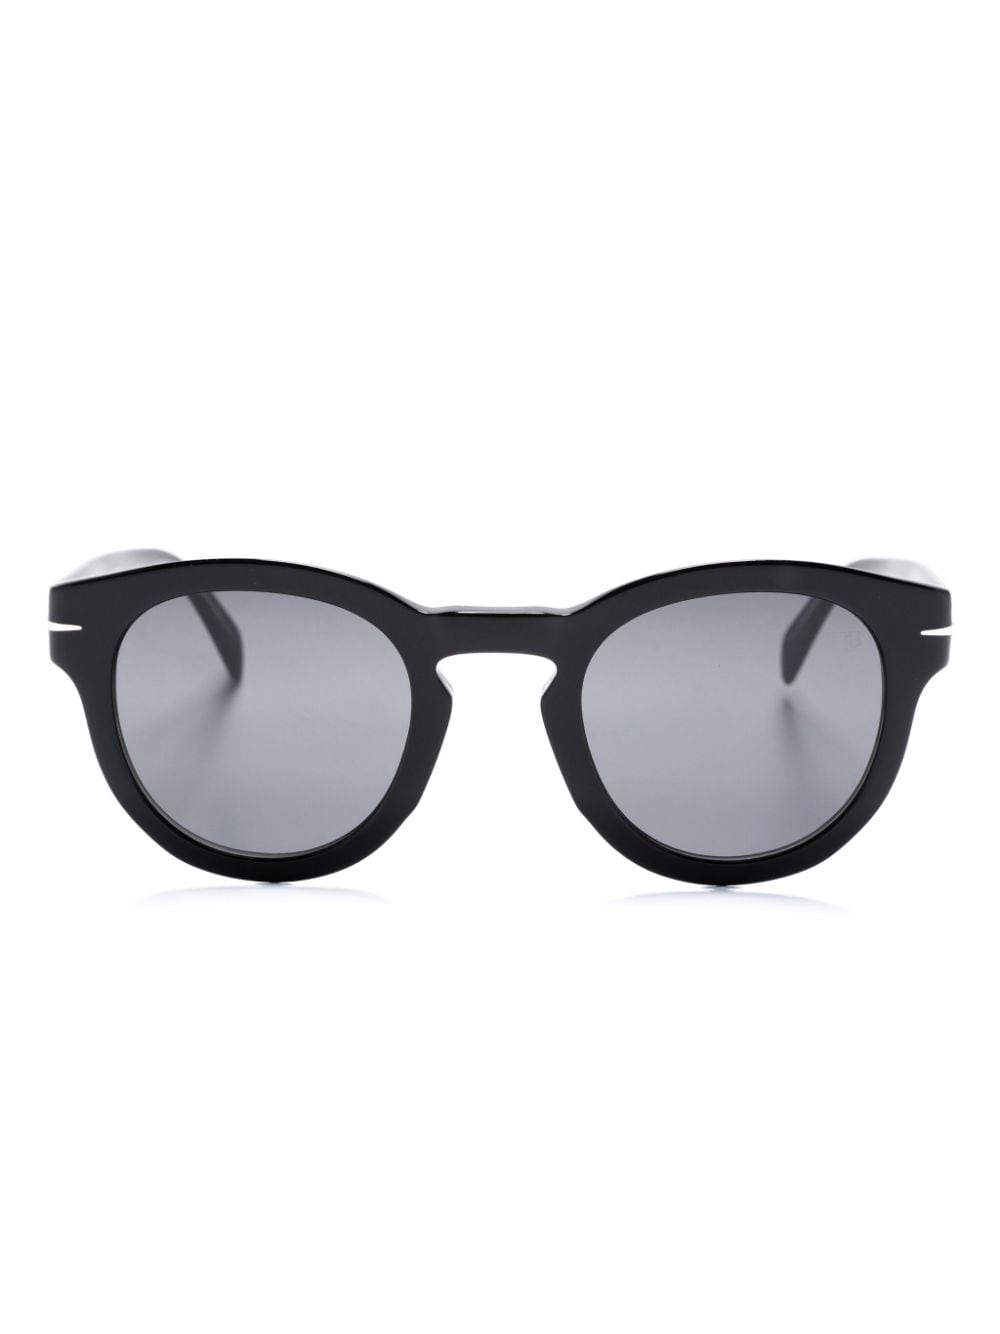 Eyewear by David Beckham round-frame sunglasses - Black von Eyewear by David Beckham